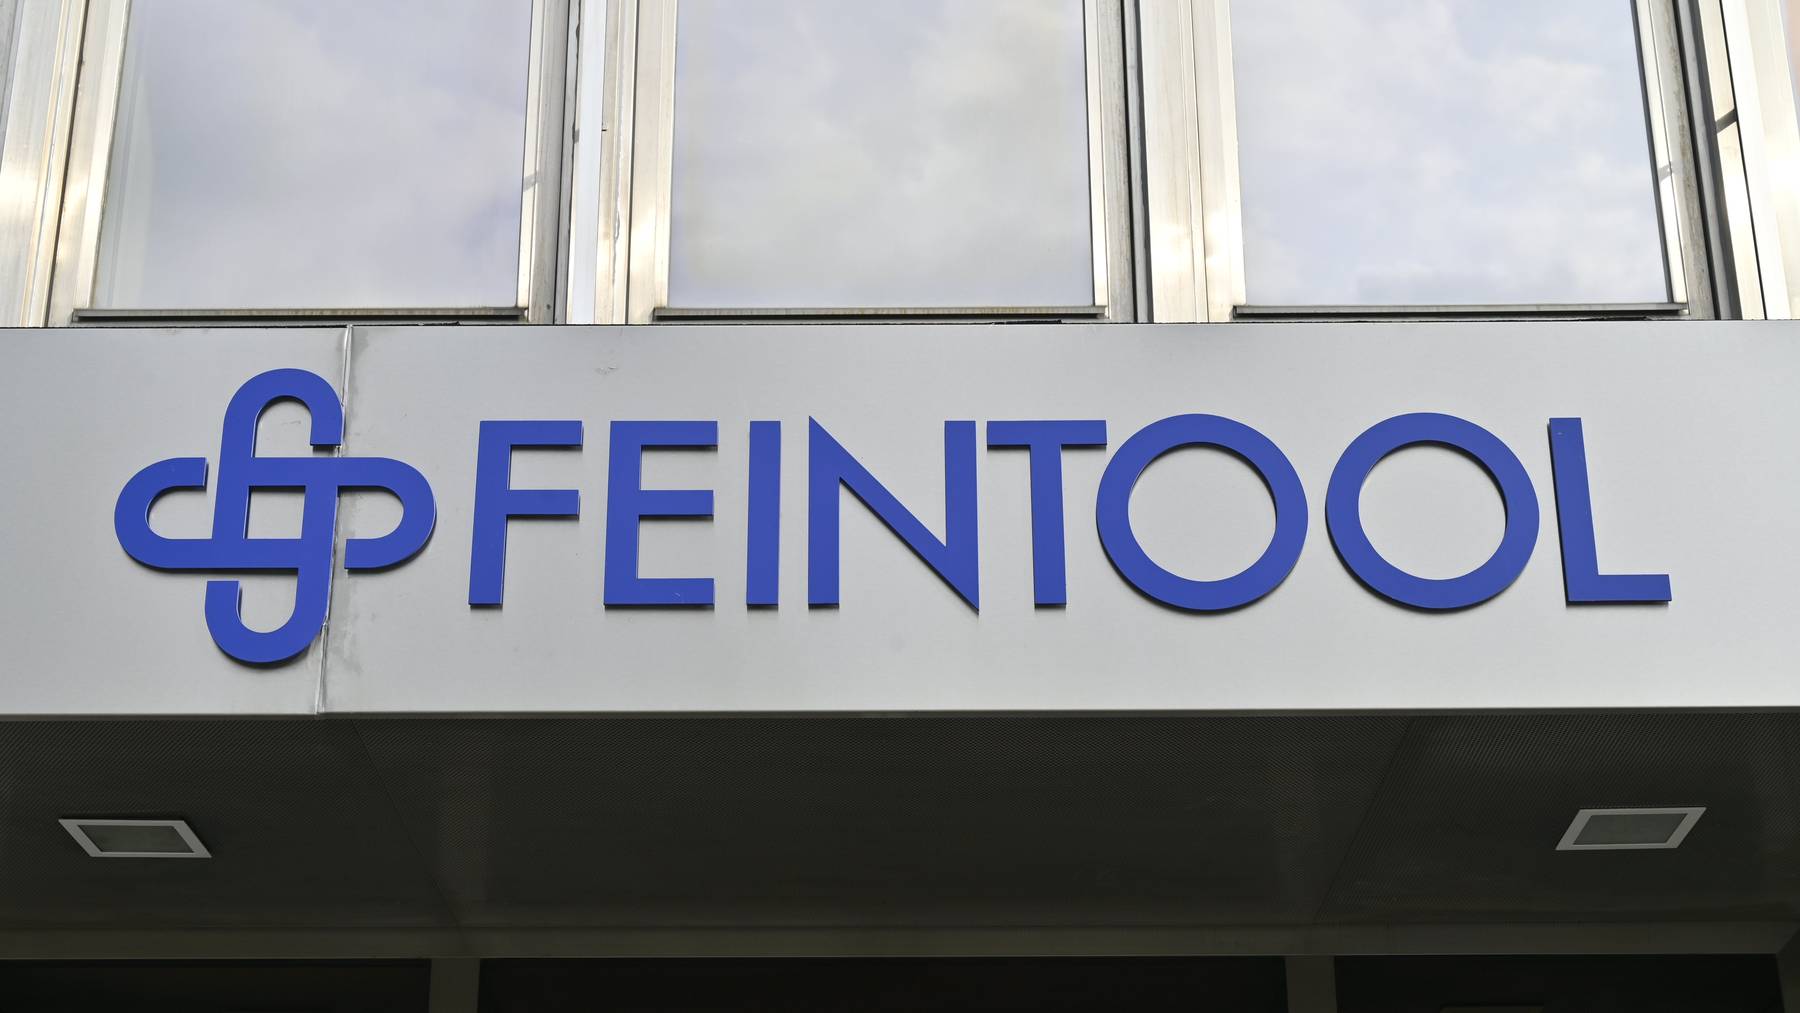 Der Hauptsitz des weltweit tätigen Automobilzulieferers Feintool befindet sich im bernischen Lyss. (Symbolbild)